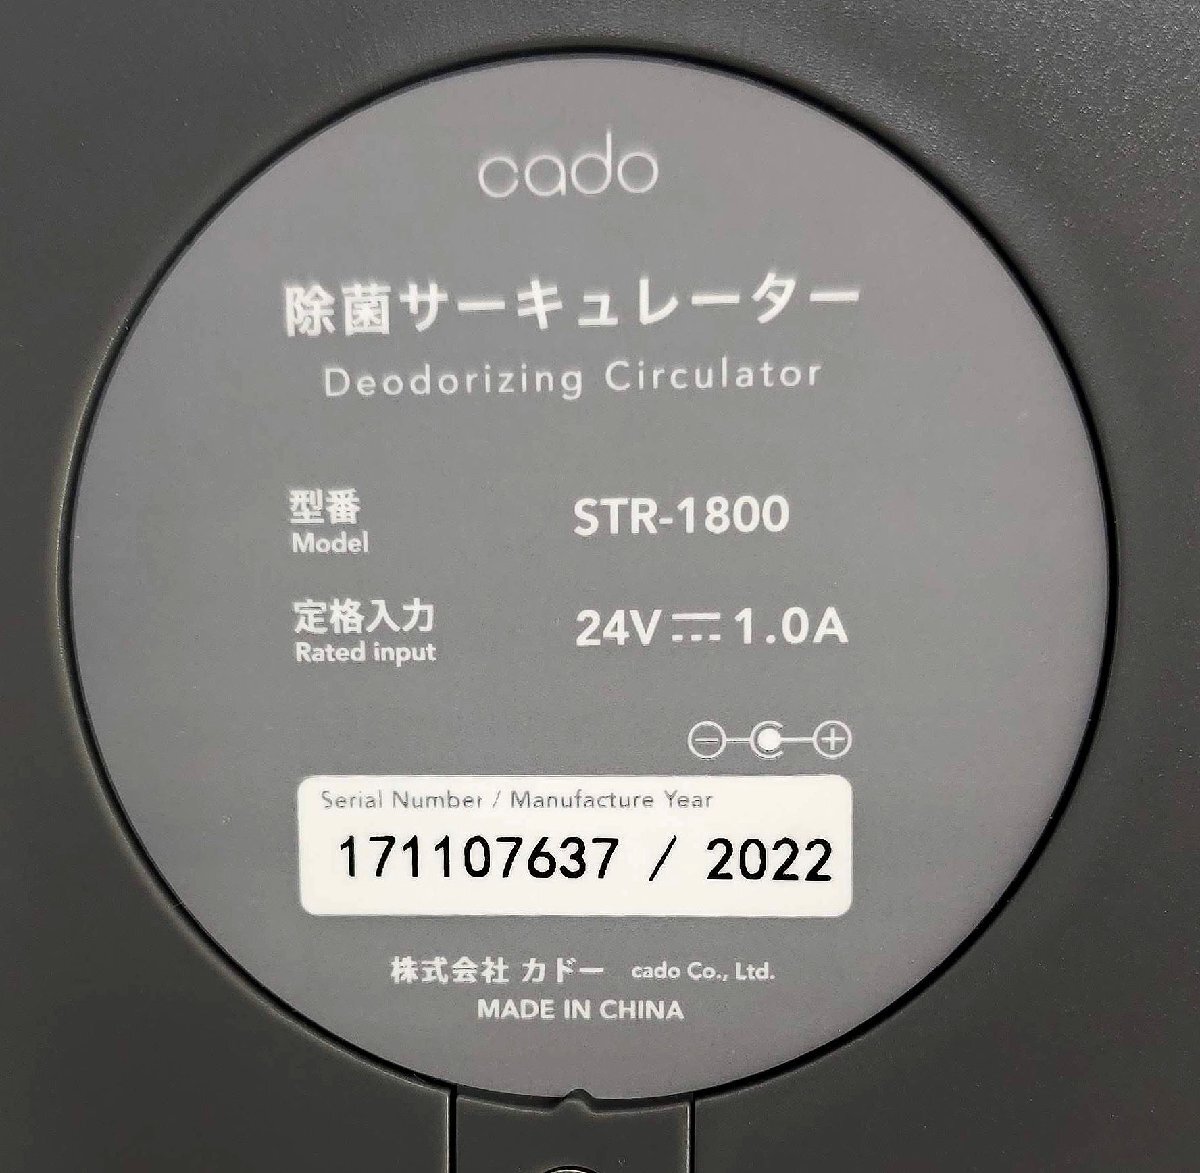  прекрасный товар работа хороший kado-/cado устранение бактерий циркулятор STREAM1800 прохладный серый STR-1800-CG кондиционер Stream 